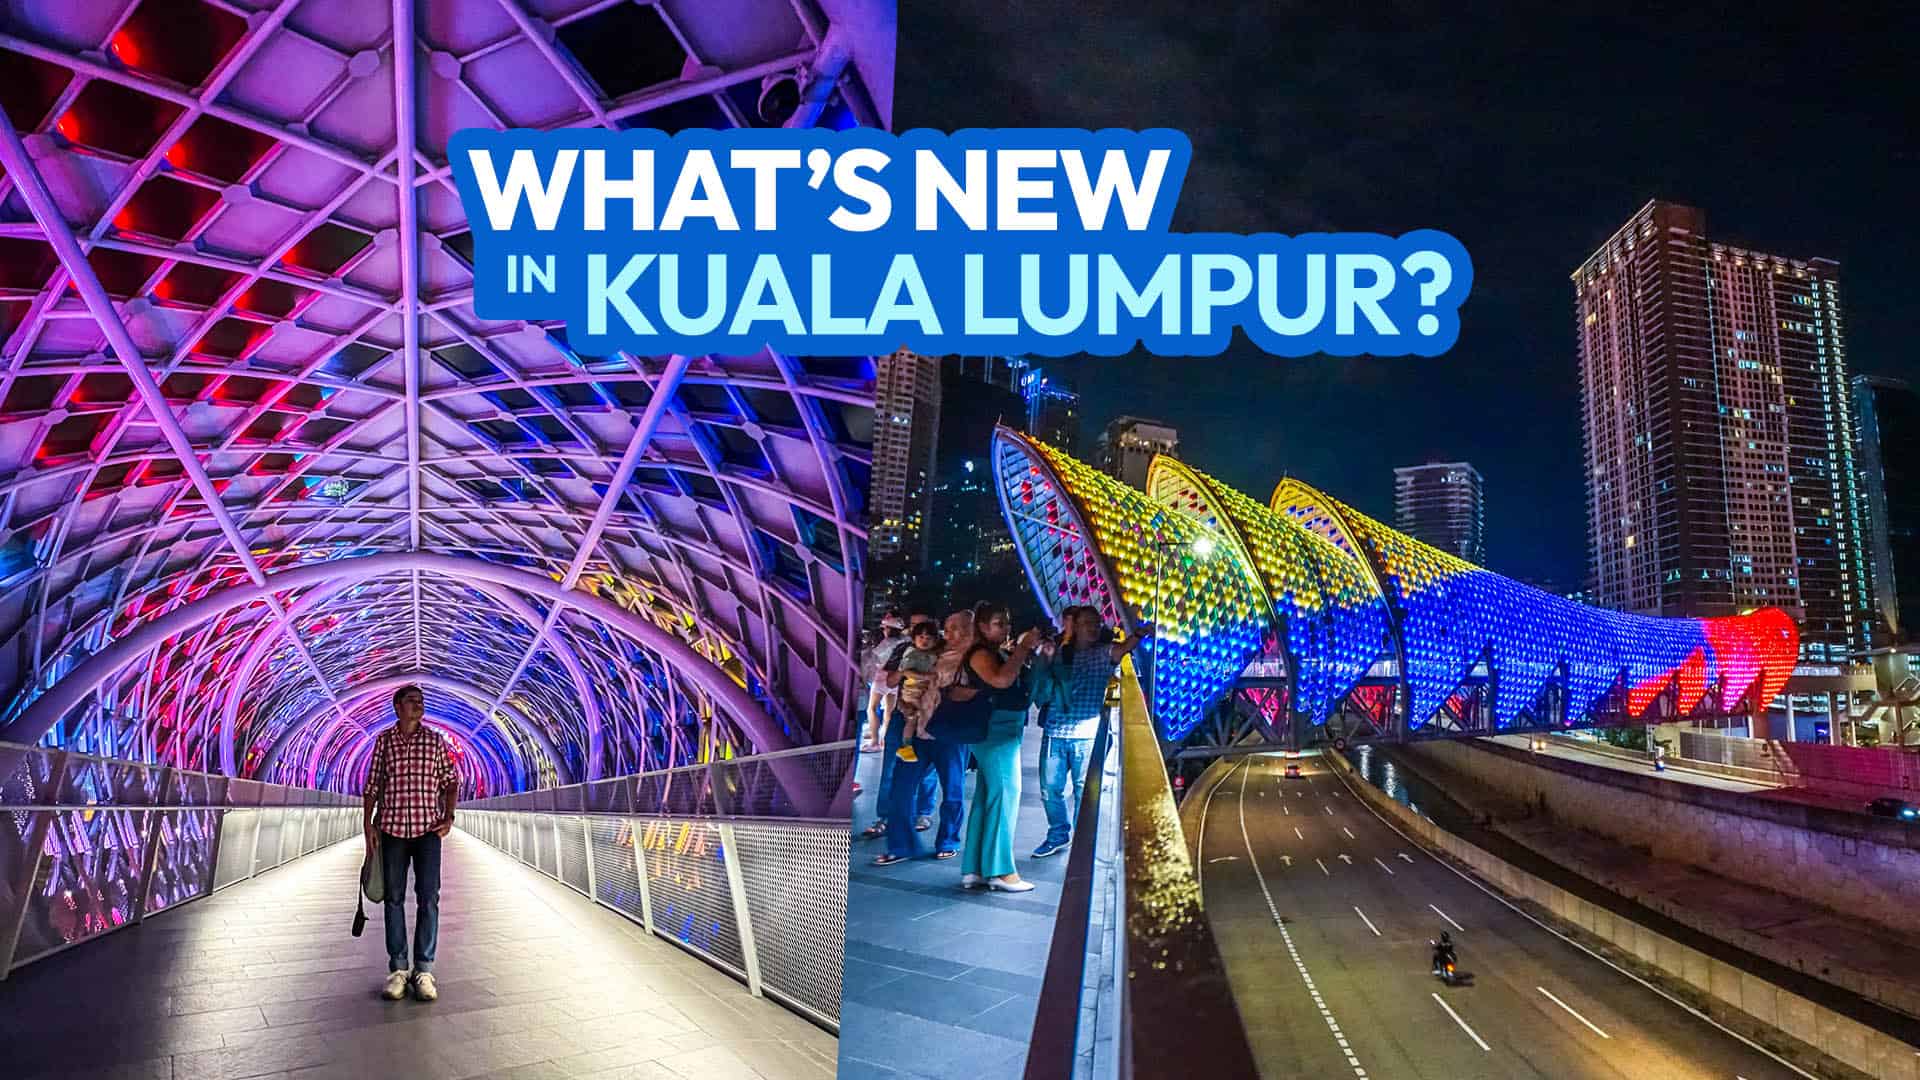 吉隆坡有什么新鲜事?7个吸引回头客的新景点!